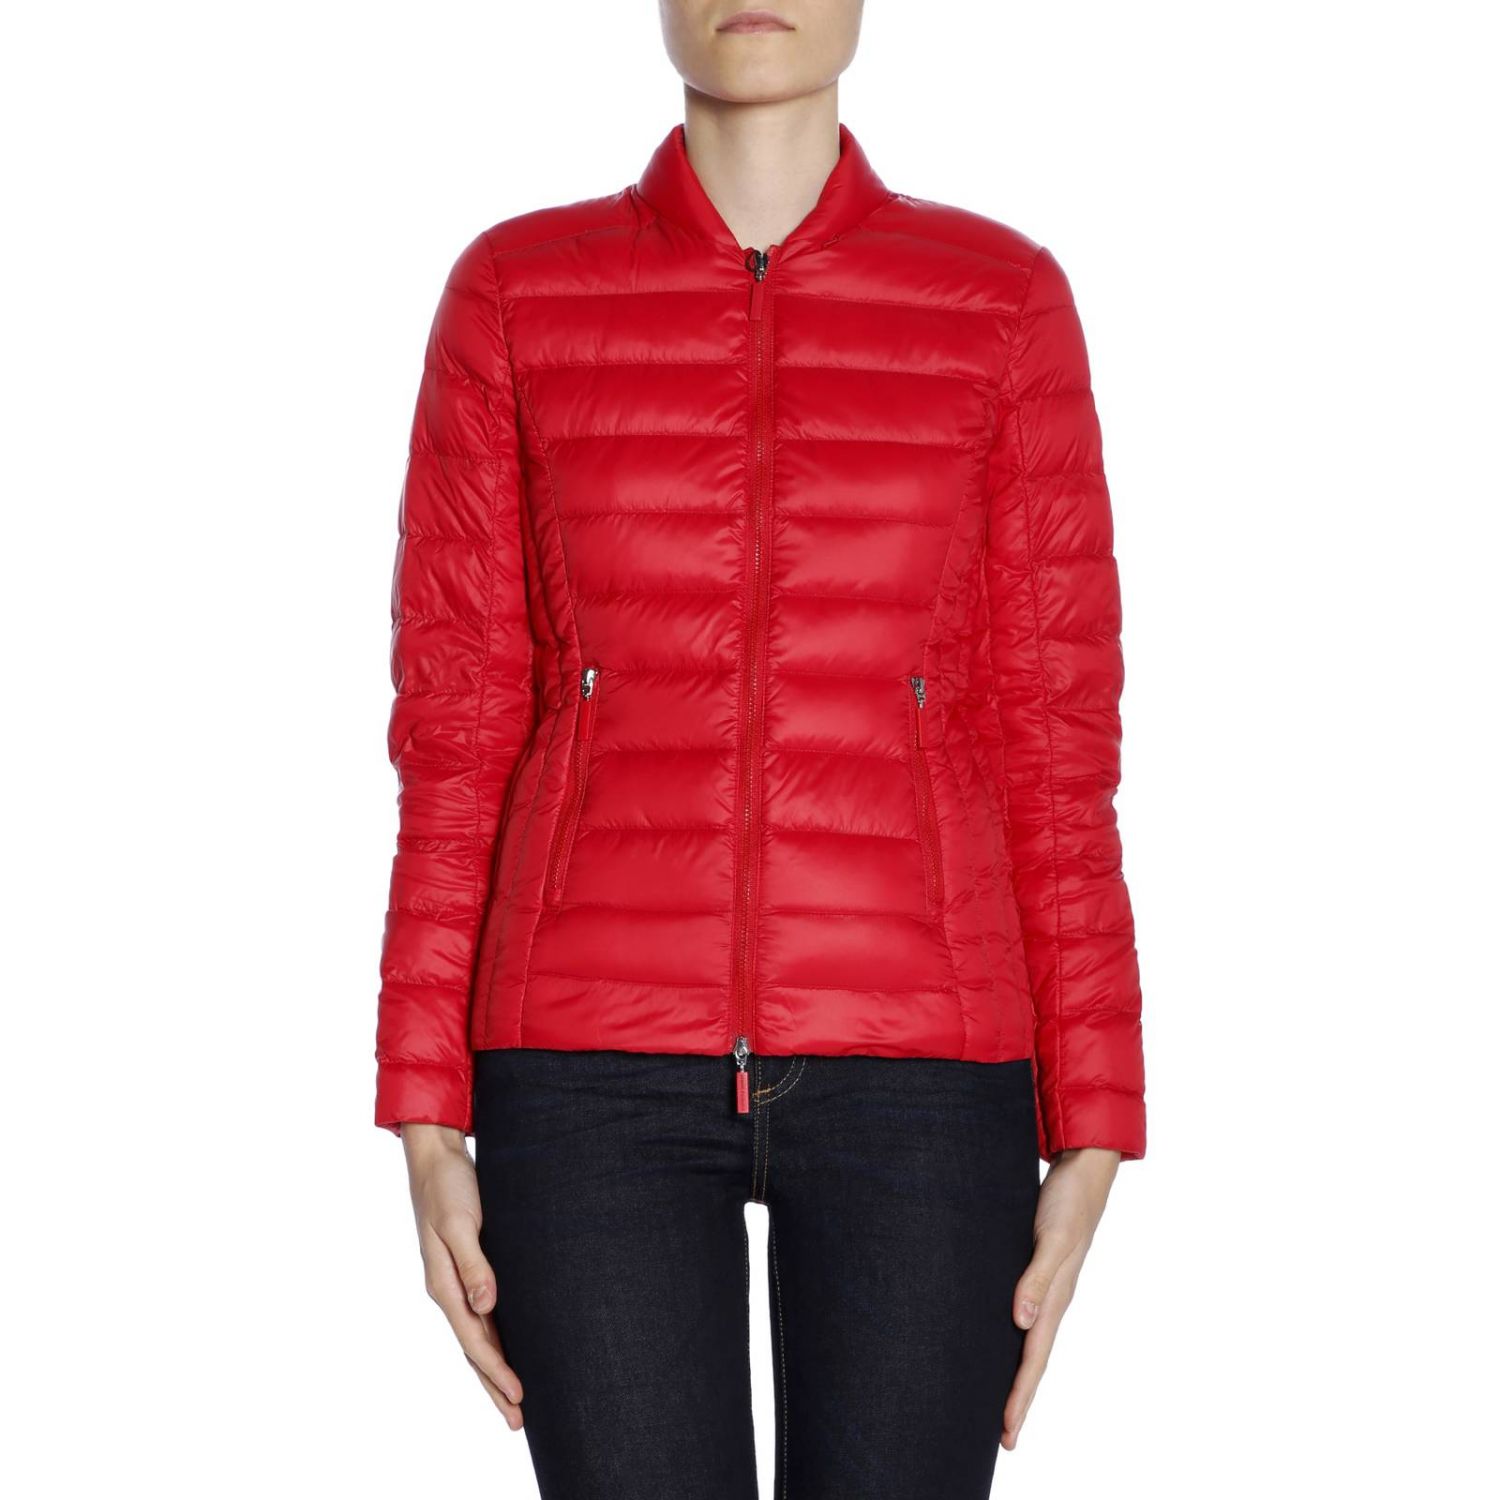 Armani Exchange Outlet: Jacket women - Red | Jacket Armani Exchange ...